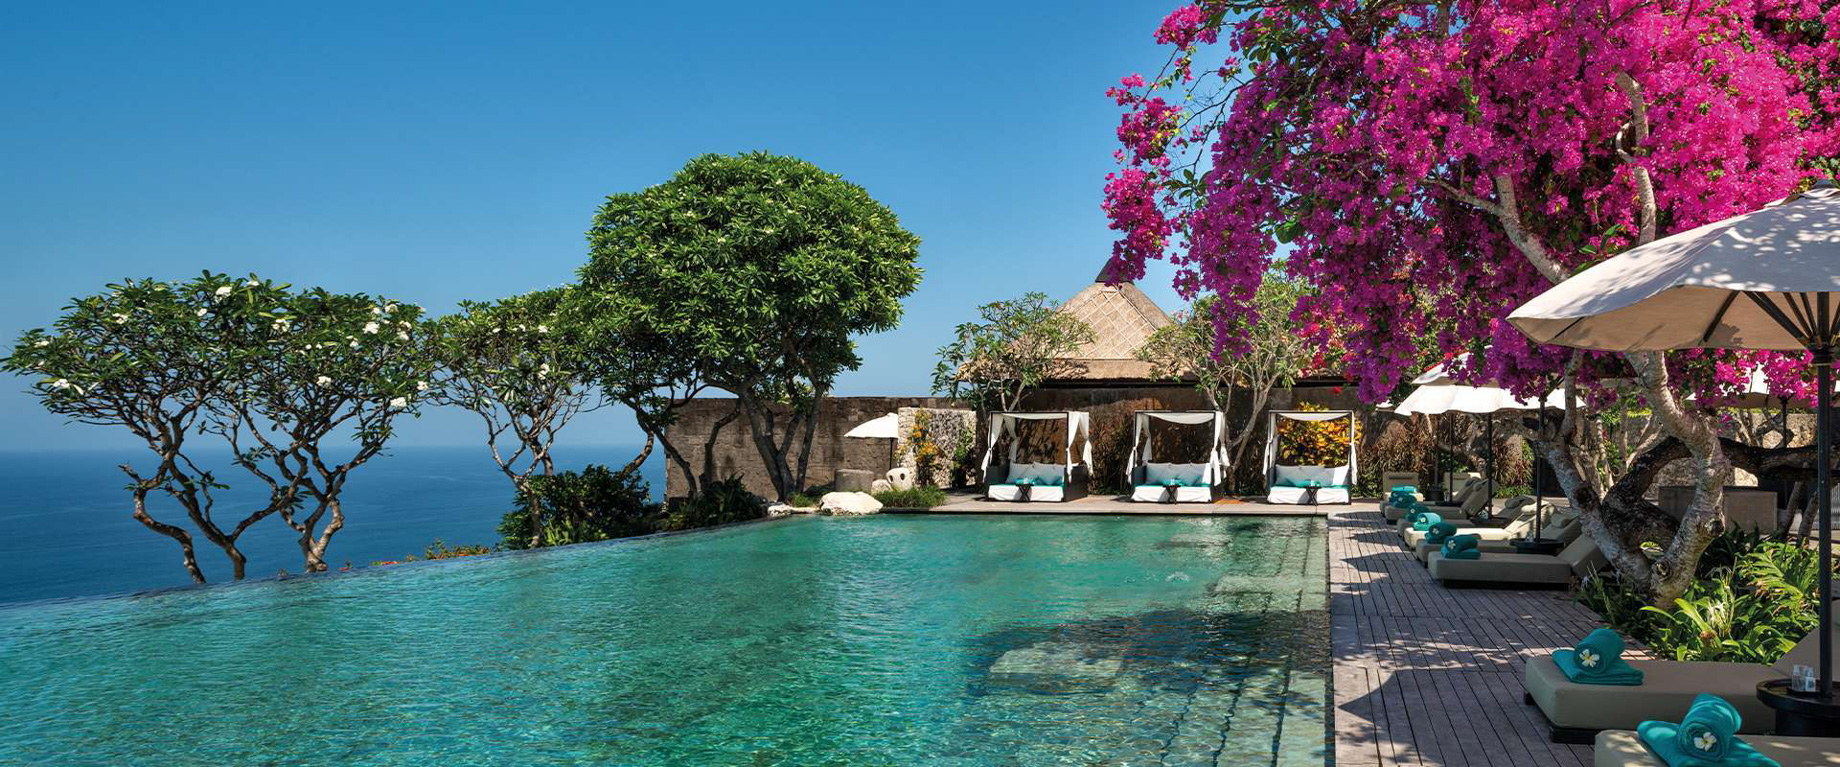 Bvlgari Resort Bali – Uluwatu, Bali, Indonesia – Resort Infinity Pool Deck Ocean View